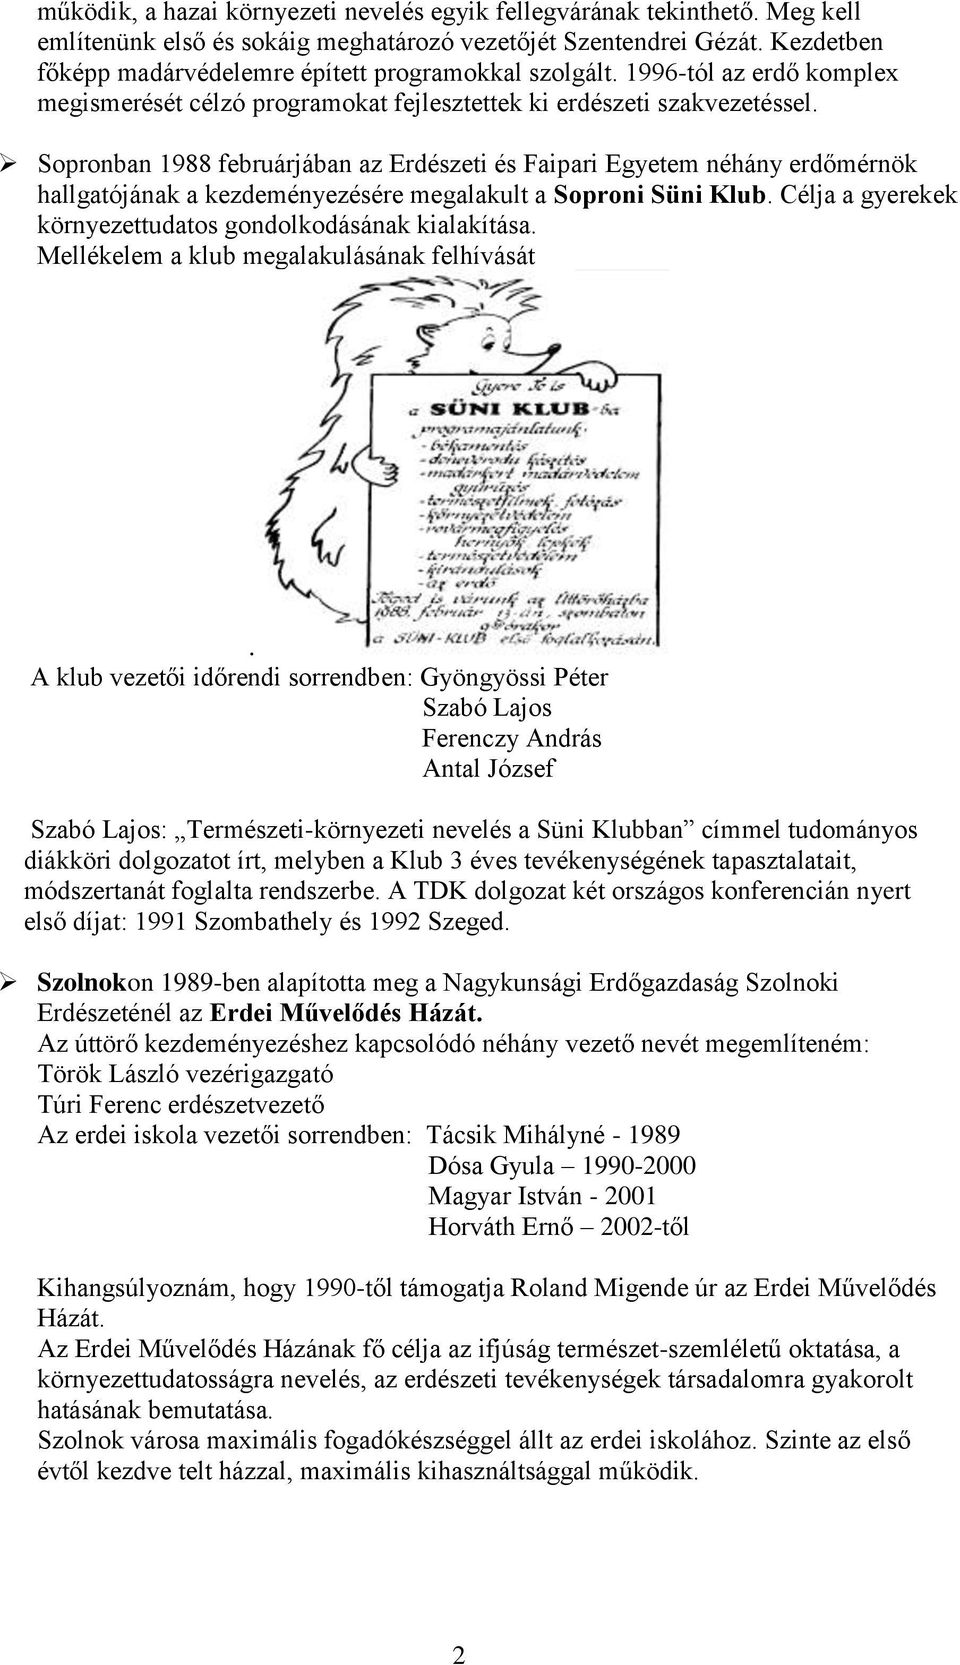 Sopronban 1988 februárjában az Erdészeti és Faipari Egyetem néhány erdőmérnök hallgatójának a kezdeményezésére megalakult a Soproni Süni Klub.